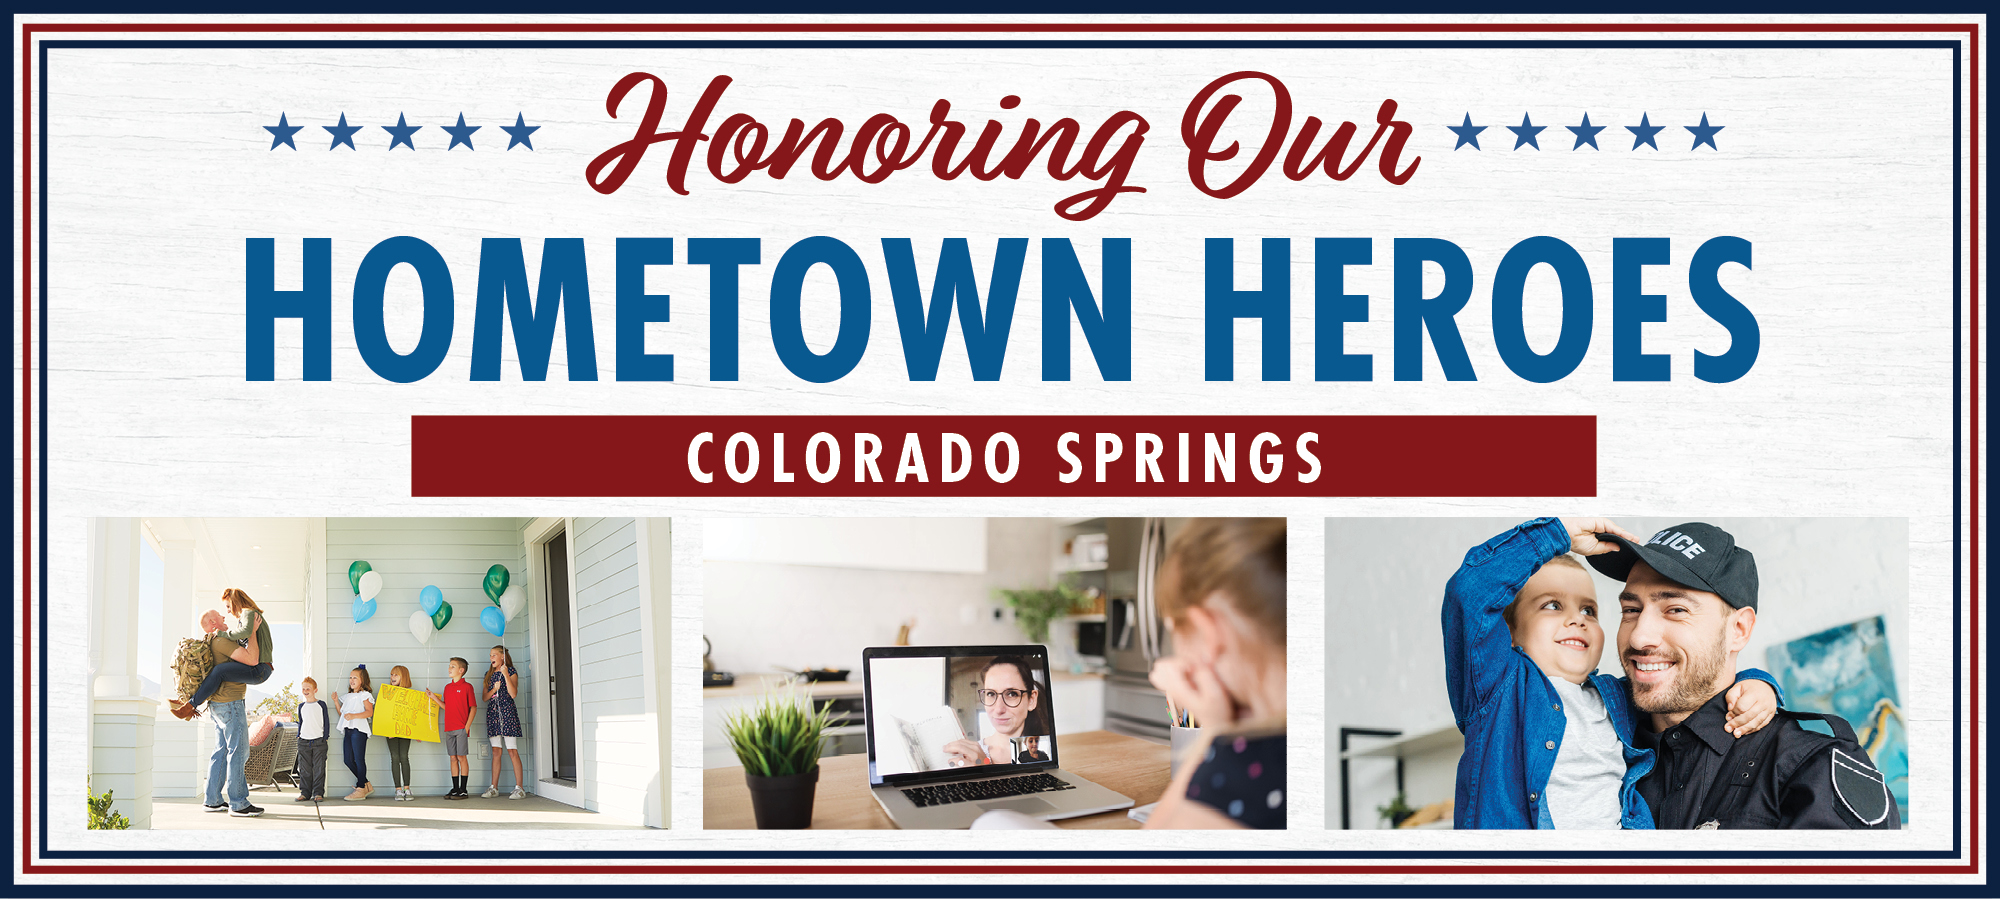 Salute to Hometown Heroes in Colorado Springs